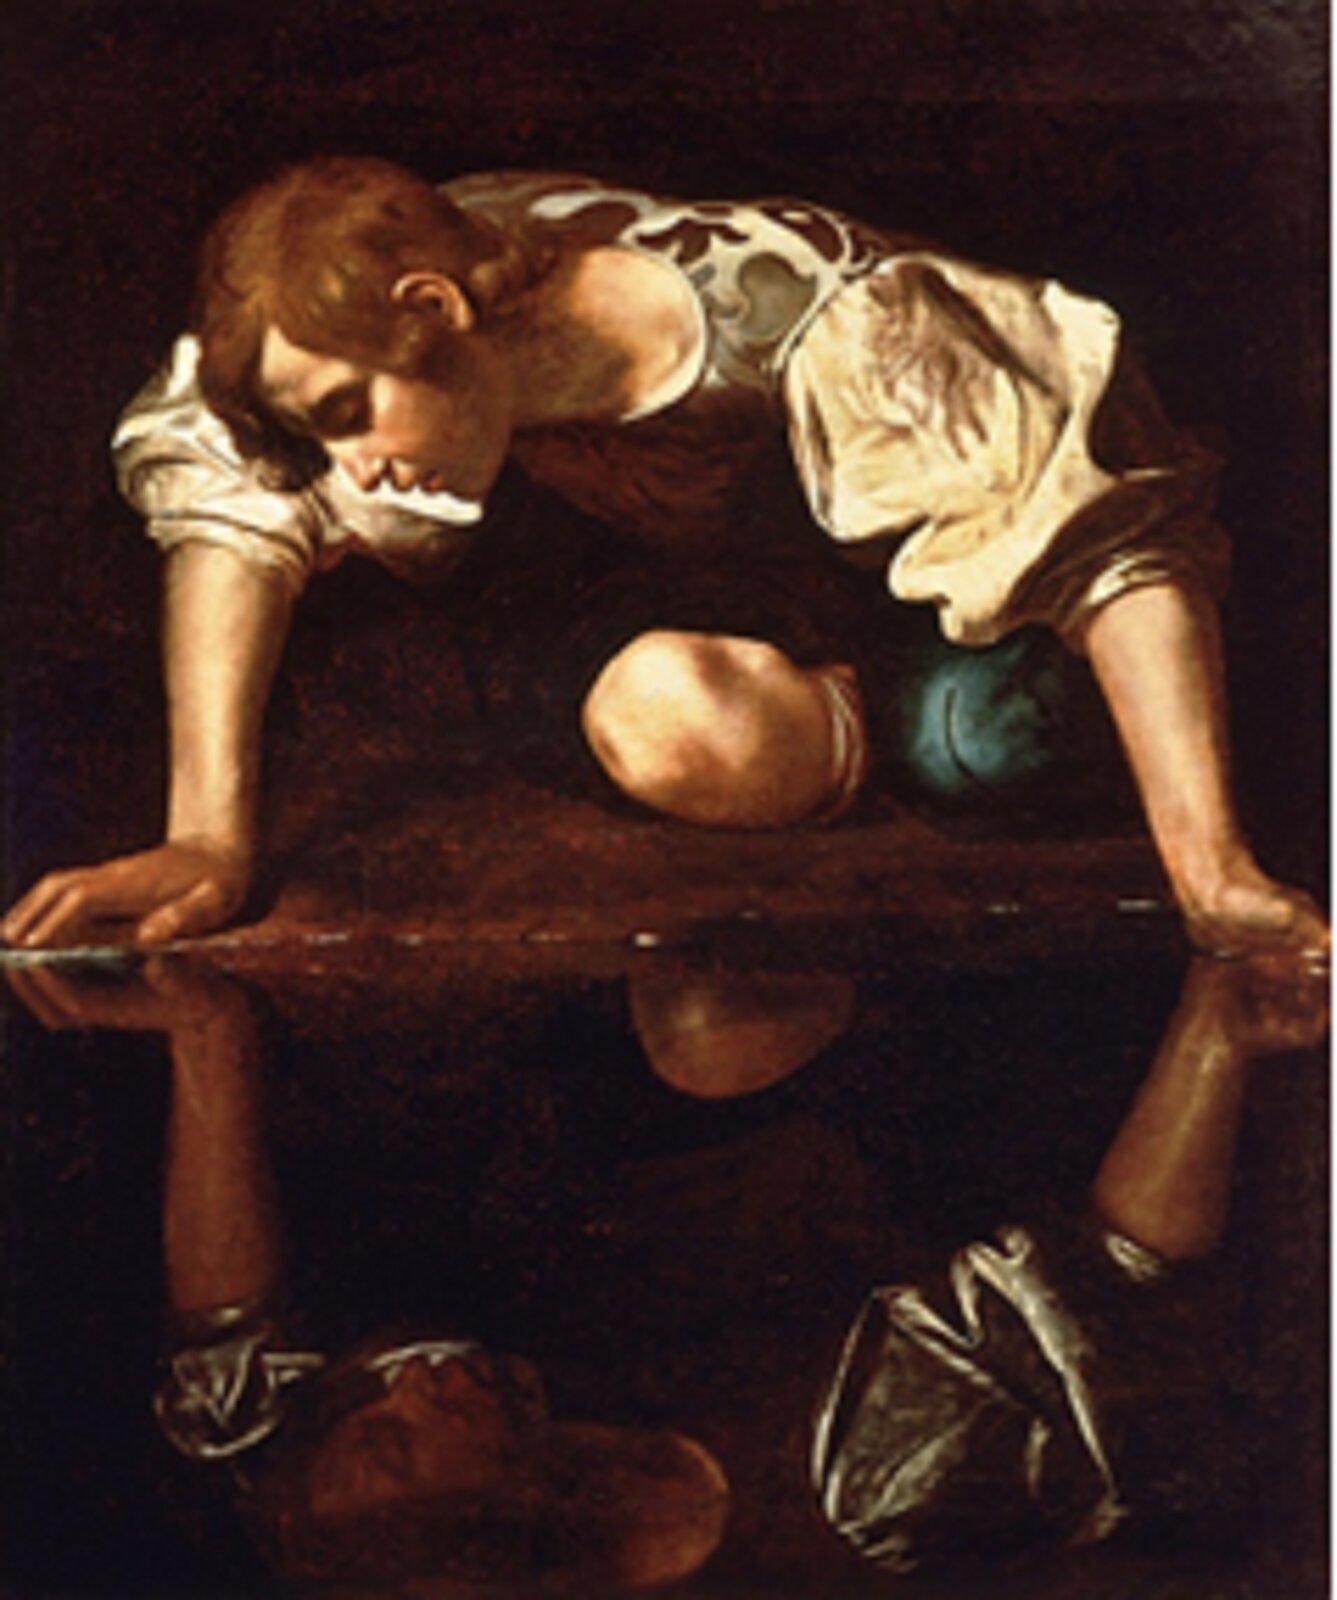 Ilustracja przedstawia dzieło Caravaggio pt. „Narcyz”. Artysta namalował młodego i pięknego młodzieńca, który klęcząc pochyla się nad spokojnym lustrem wody. Mężczyzna opiera się w niewygodnej pozycji na kolanach, jego ciało jest mocno pochylone do przodu. Narcyz ma delikatną twarz, długie włosy. Ubrany jest w strój zgodny z epoką. Narcyz zapatrzony jest we własne odbicie, nie może oderwać wzroku.